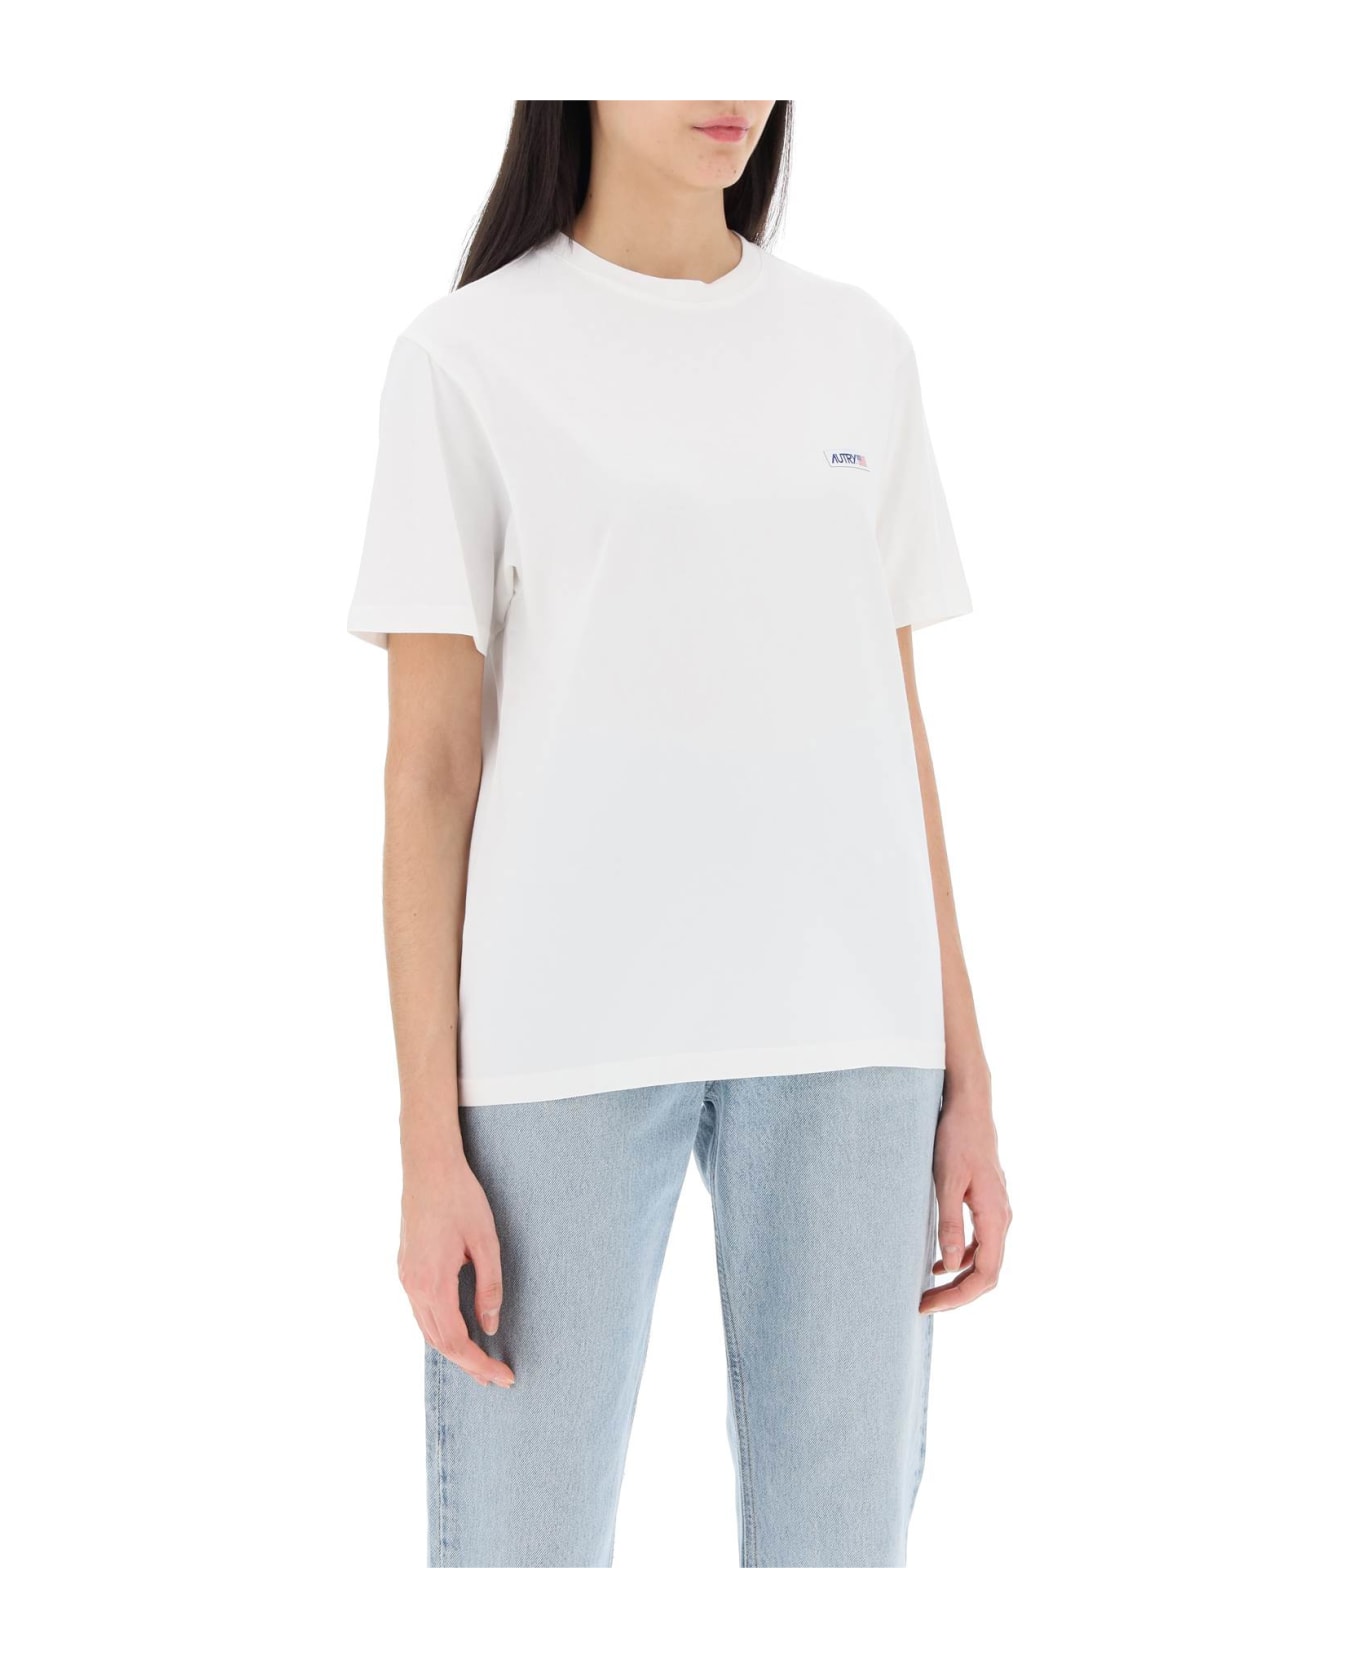 Autry Icon T-shirt - White